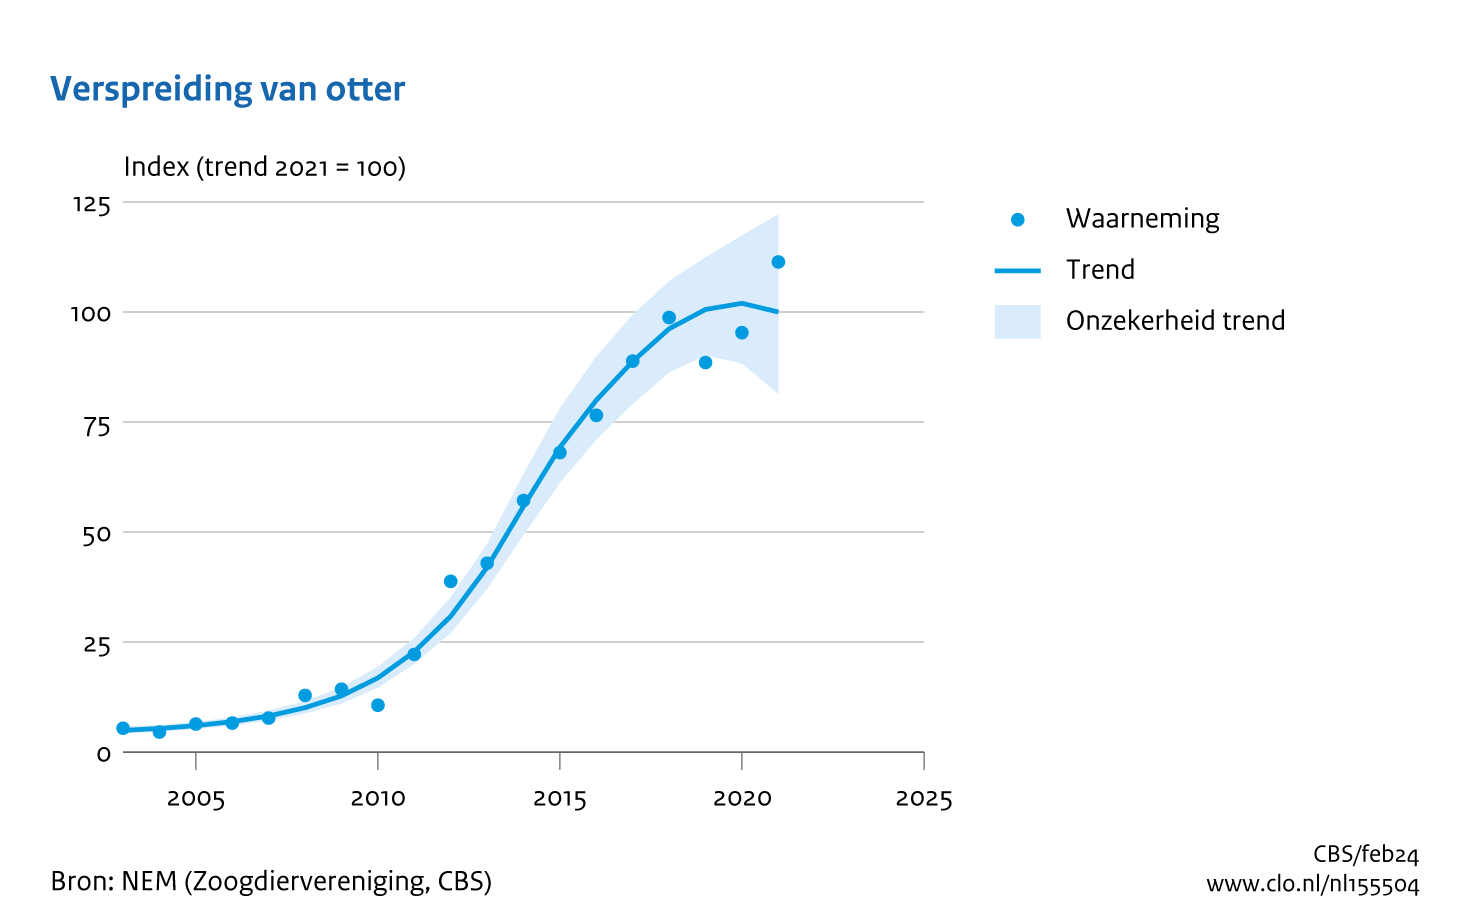 De grafiek Verspreiding van de otter laat zien dat de verspreidingstrend van de otter vanaf het eerste teljaar (1993, index = 4,9) is gestegen tot 102 in 2020. In 2021 is de trend gezakt tot 100. 
Het eerste teljaar was het niet lang nadat de otter door herintroductie terug was in Nederland. Daarom is ervoor gekozen om niet het eerste maar het laatste jaar op 100 te stellen. 
Zie voor verdere informatie de tekst van de indicator.